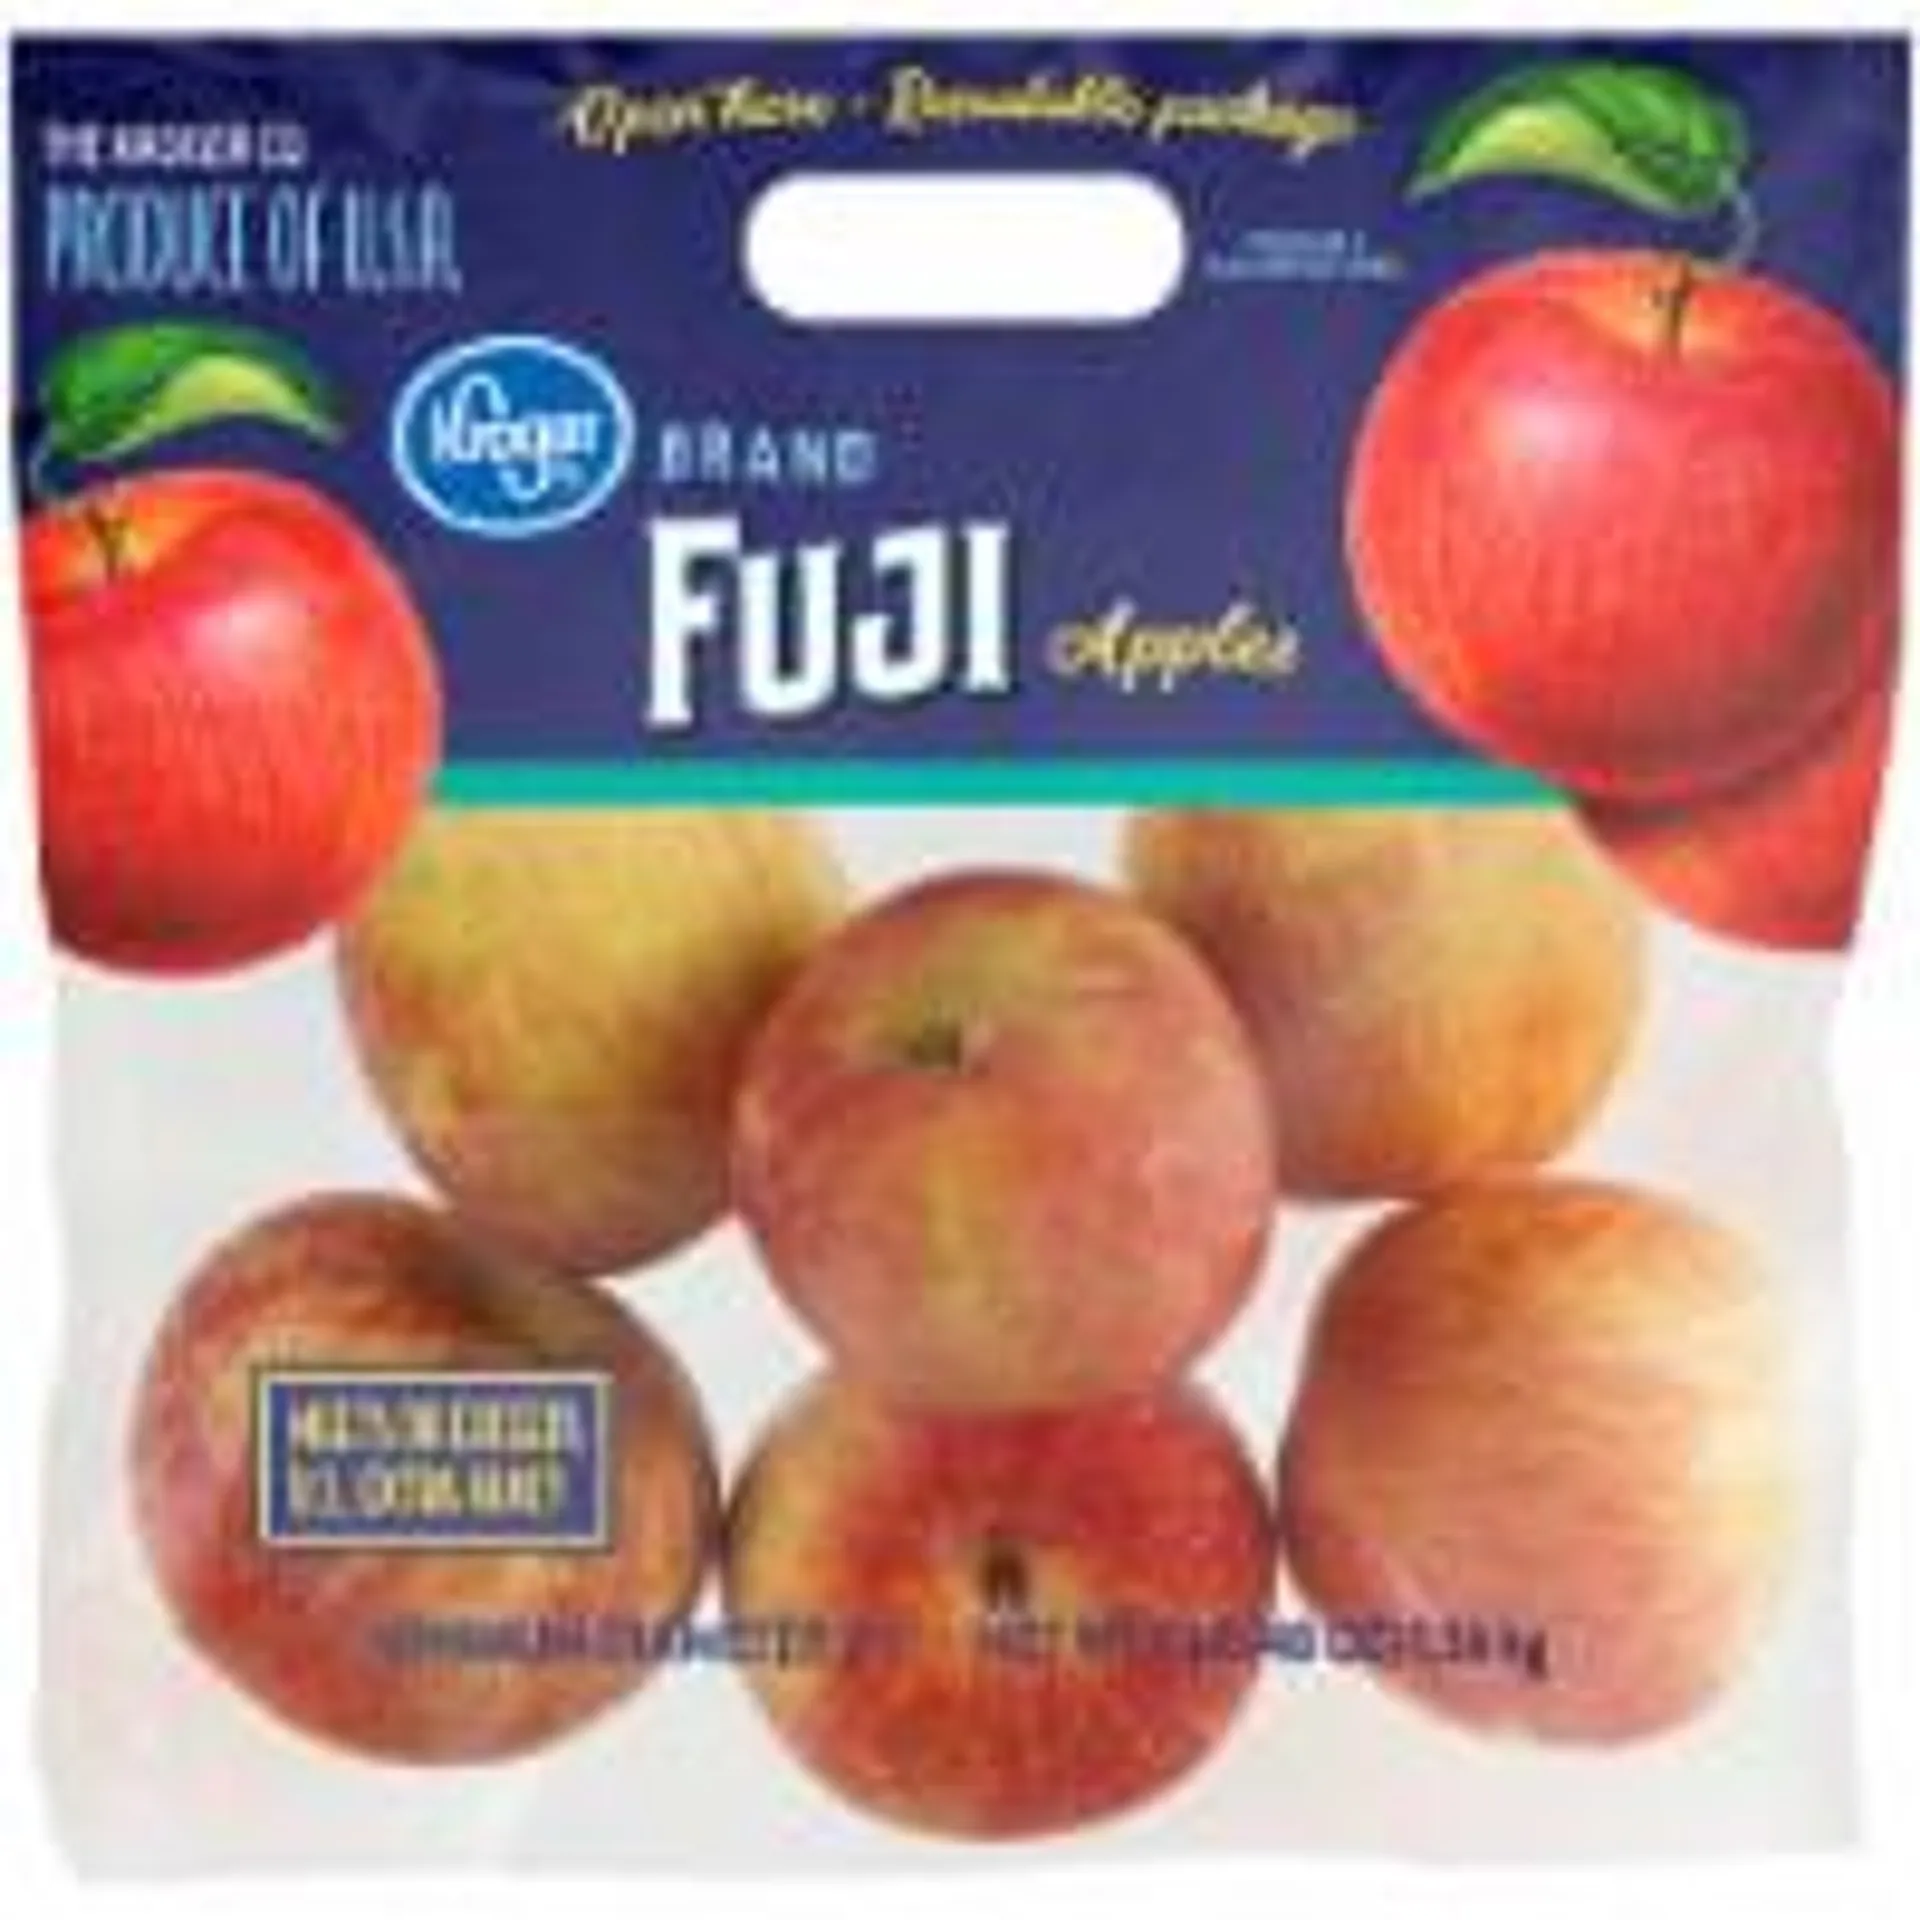 Fuji Apples Bag